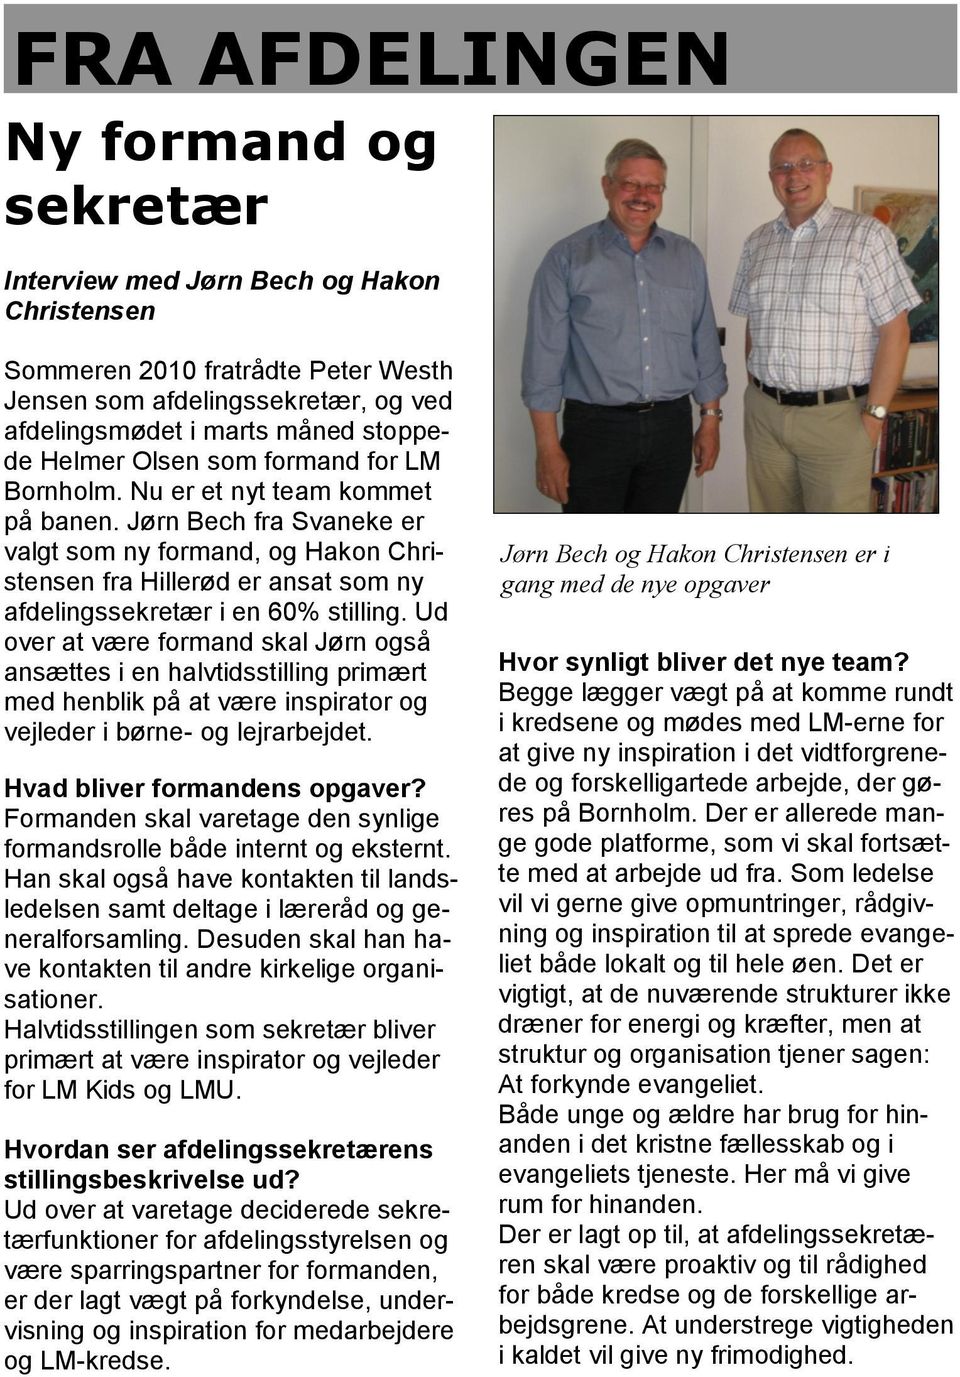 Jørn Bech fra Svaneke er valgt som ny formand, og Hakon Christensen fra Hillerød er ansat som ny afdelingssekretær i en 60% stilling.